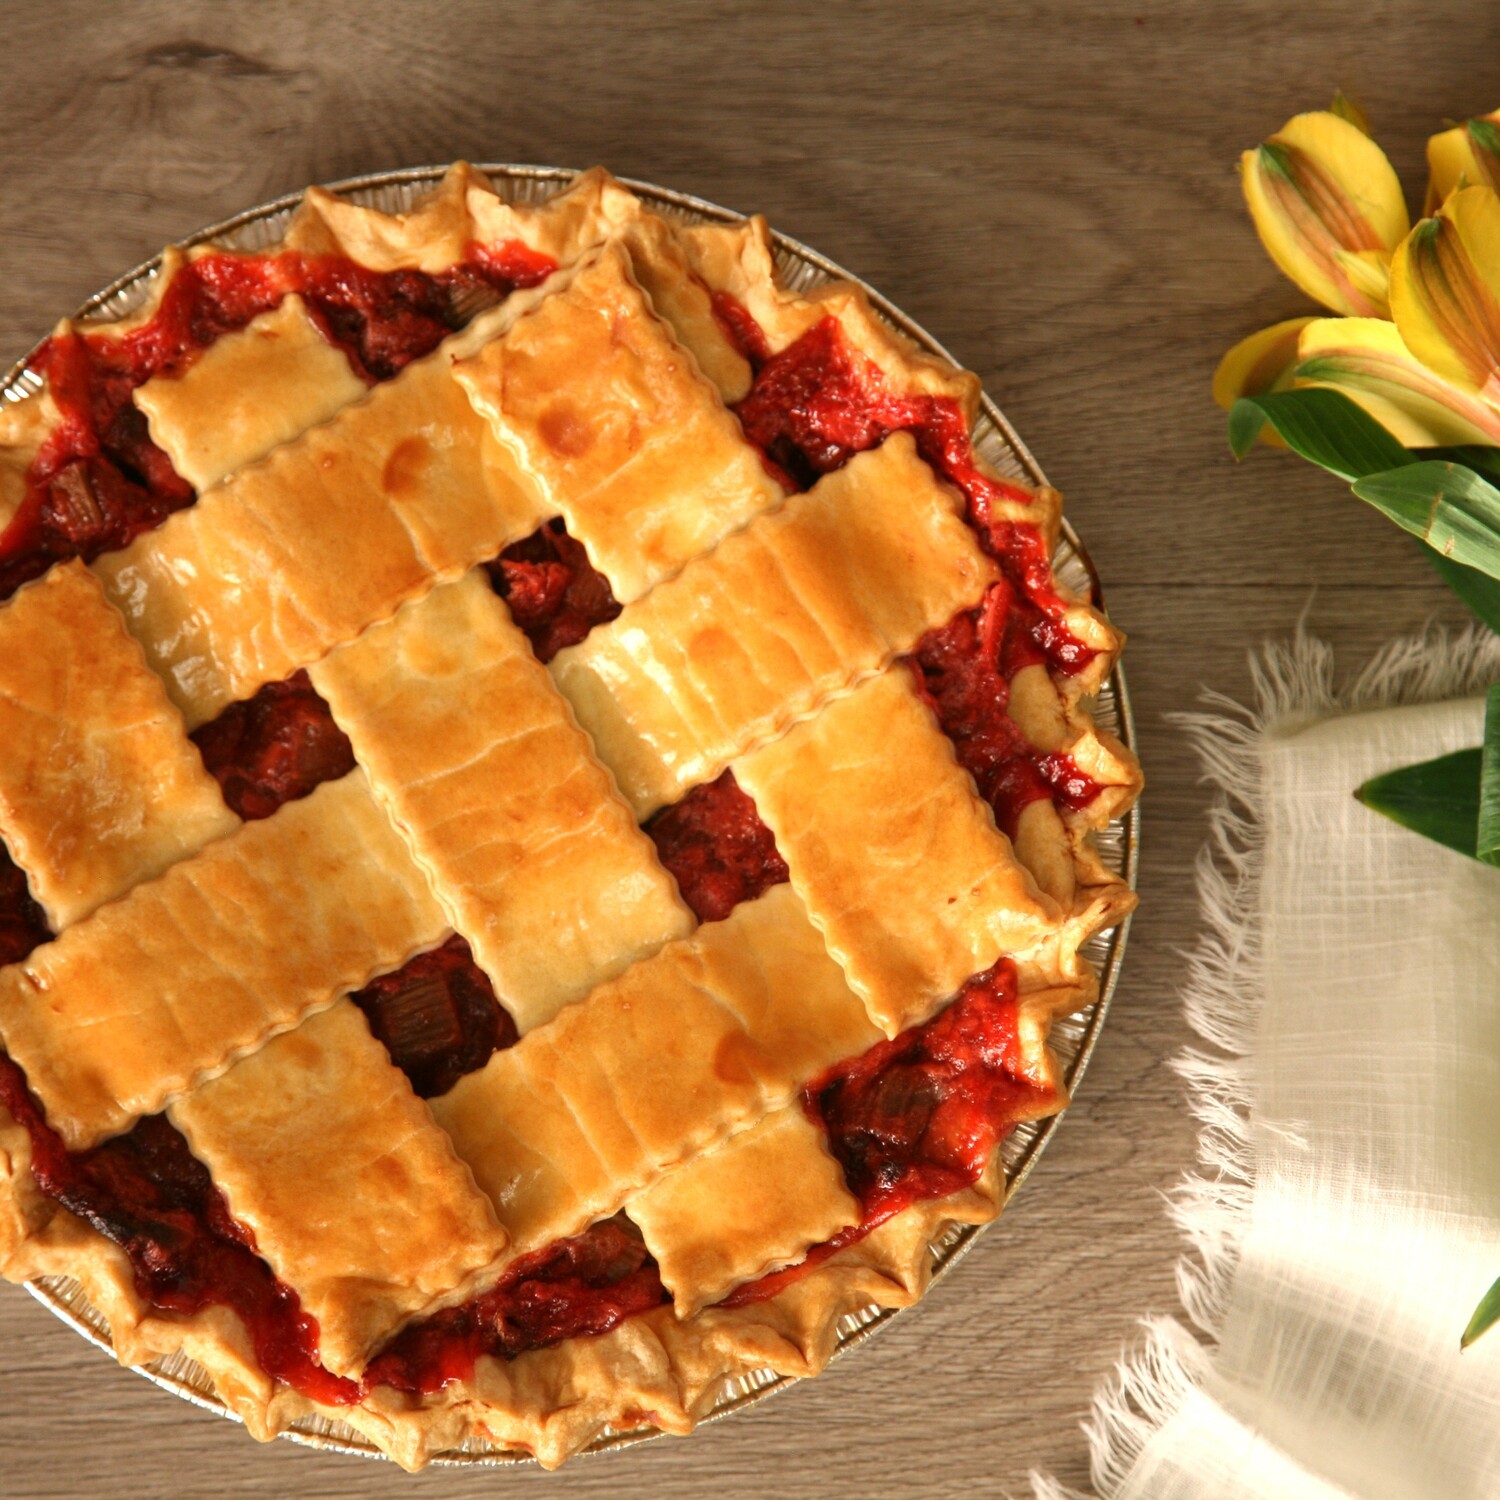 Strawberry Rhubarb Pie with lattice